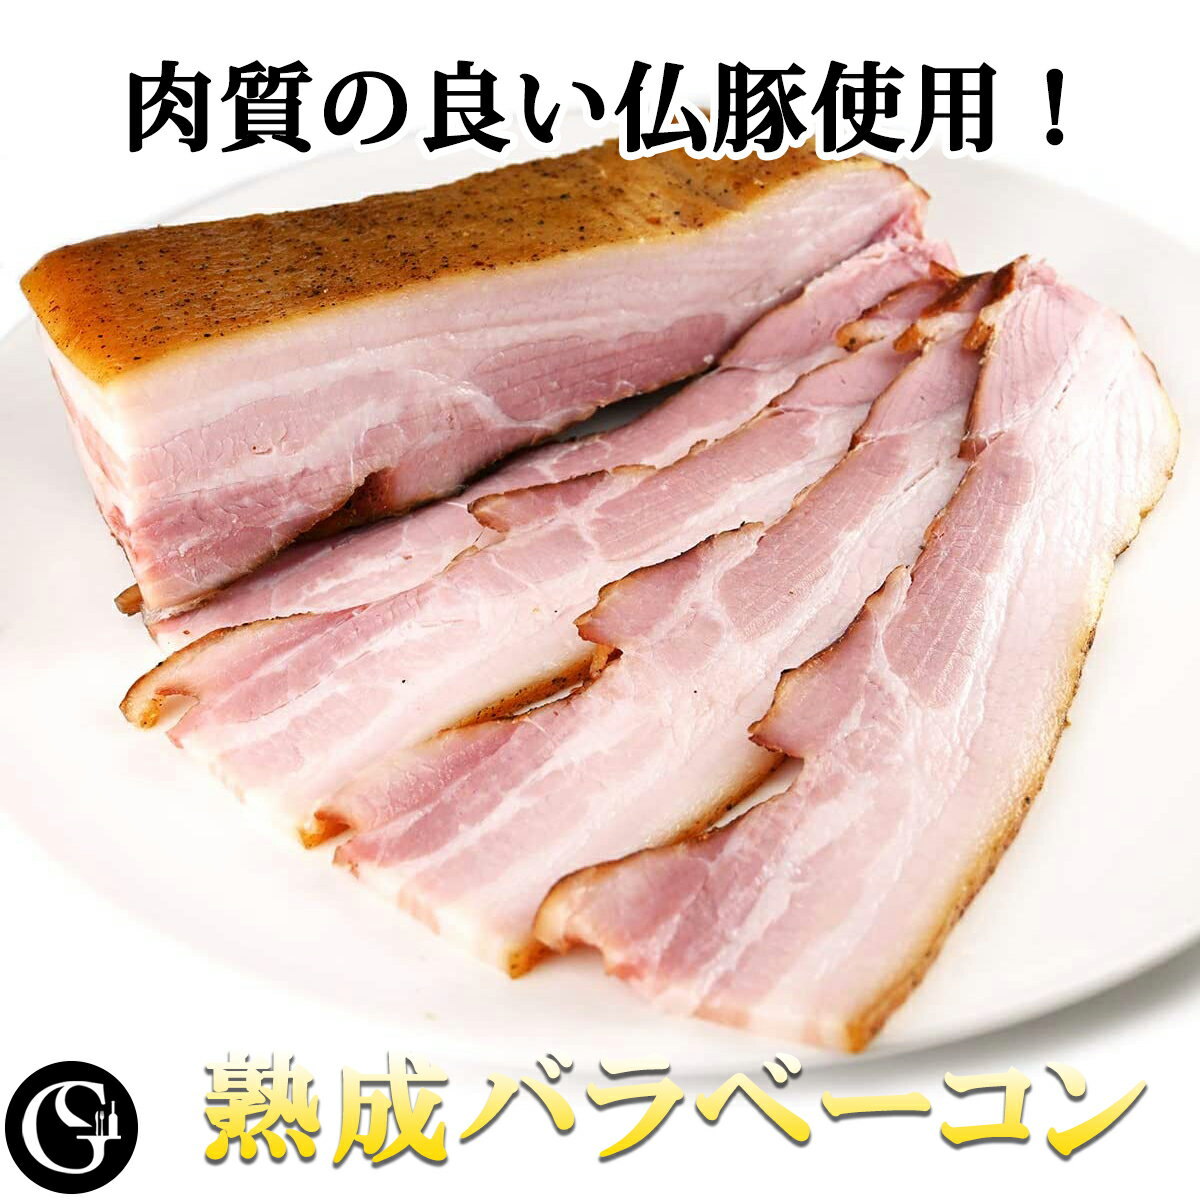 熟成バラベーコン 300g 肉質の良いフランス産豚バラ肉 使用 熟成ベーコン ブロック 朝食 ベーコンエッグ カルボナーラ